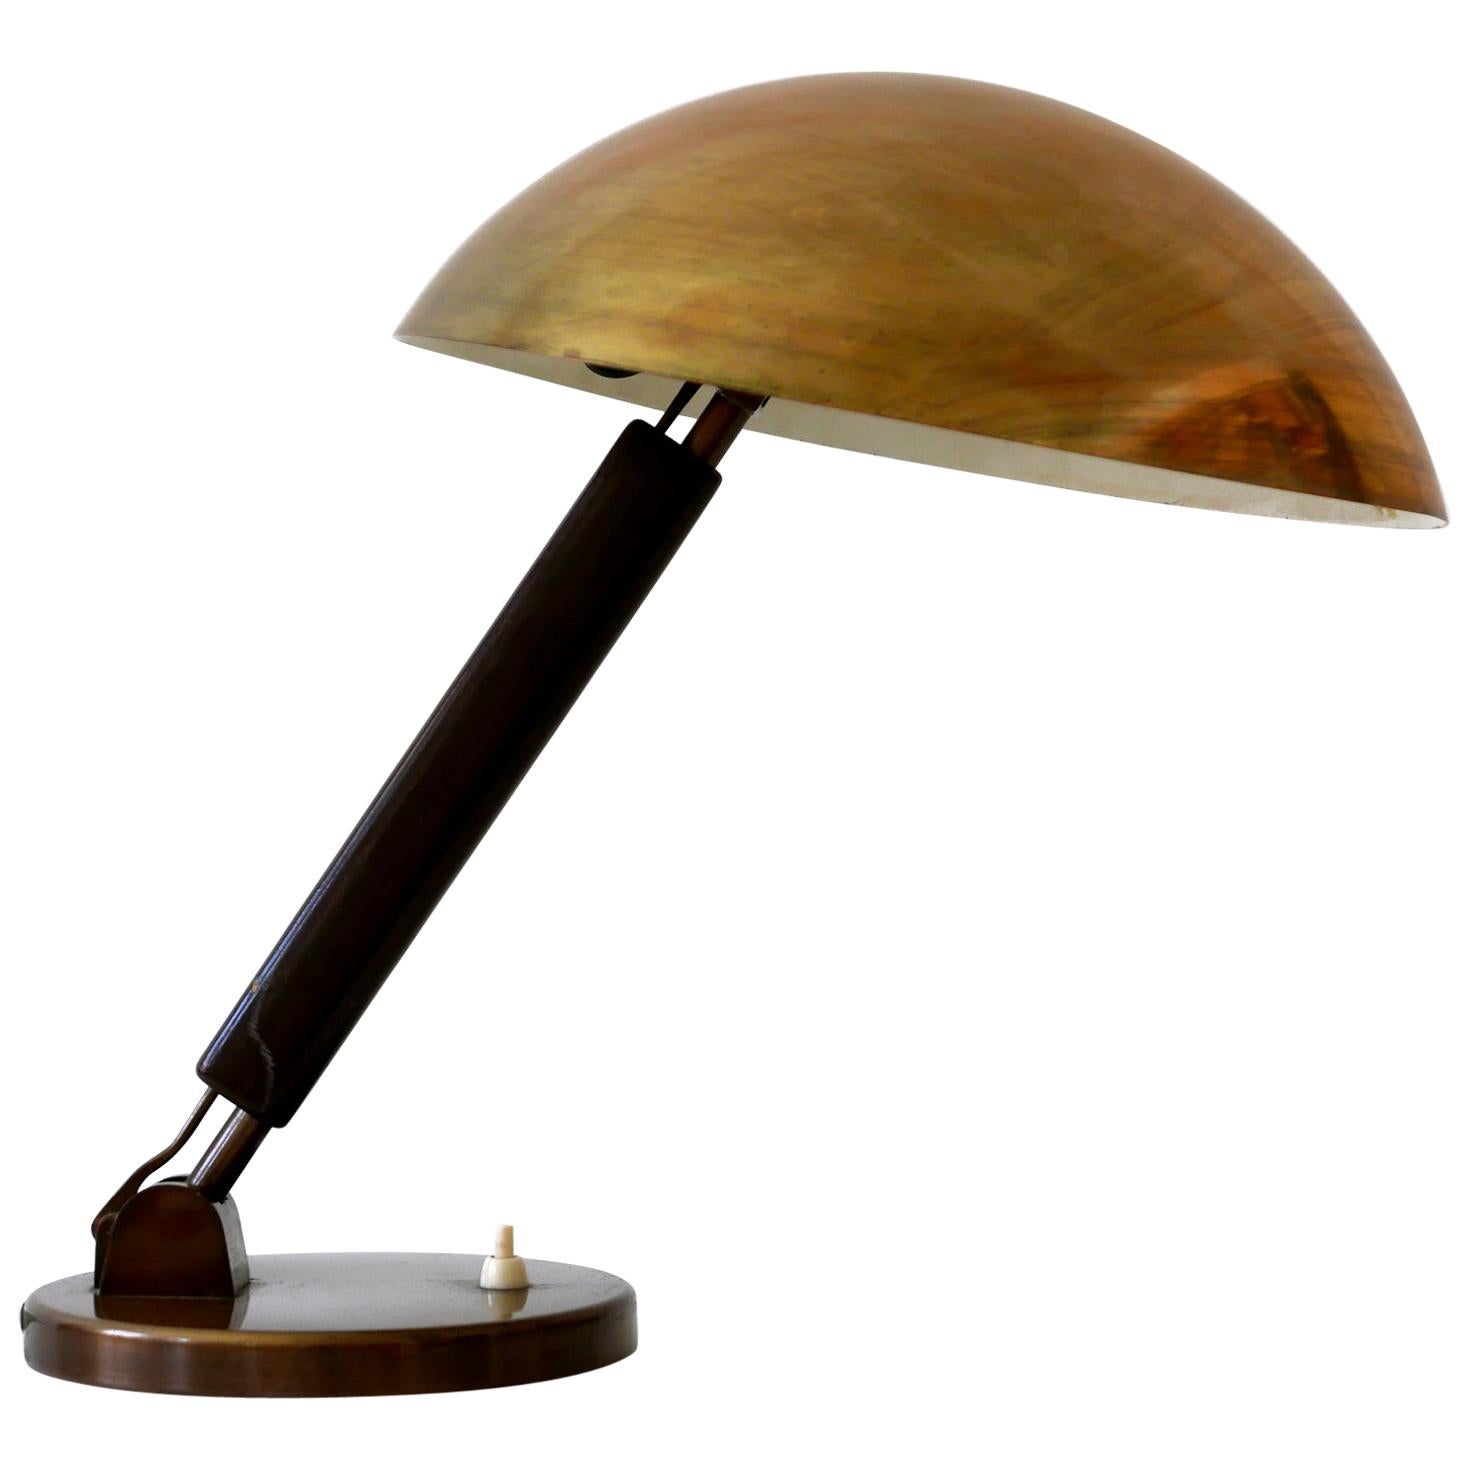 Brass Table Lamp or Desk Light by Karl Trabert for BAG Turgi, 1930s, Switzerland